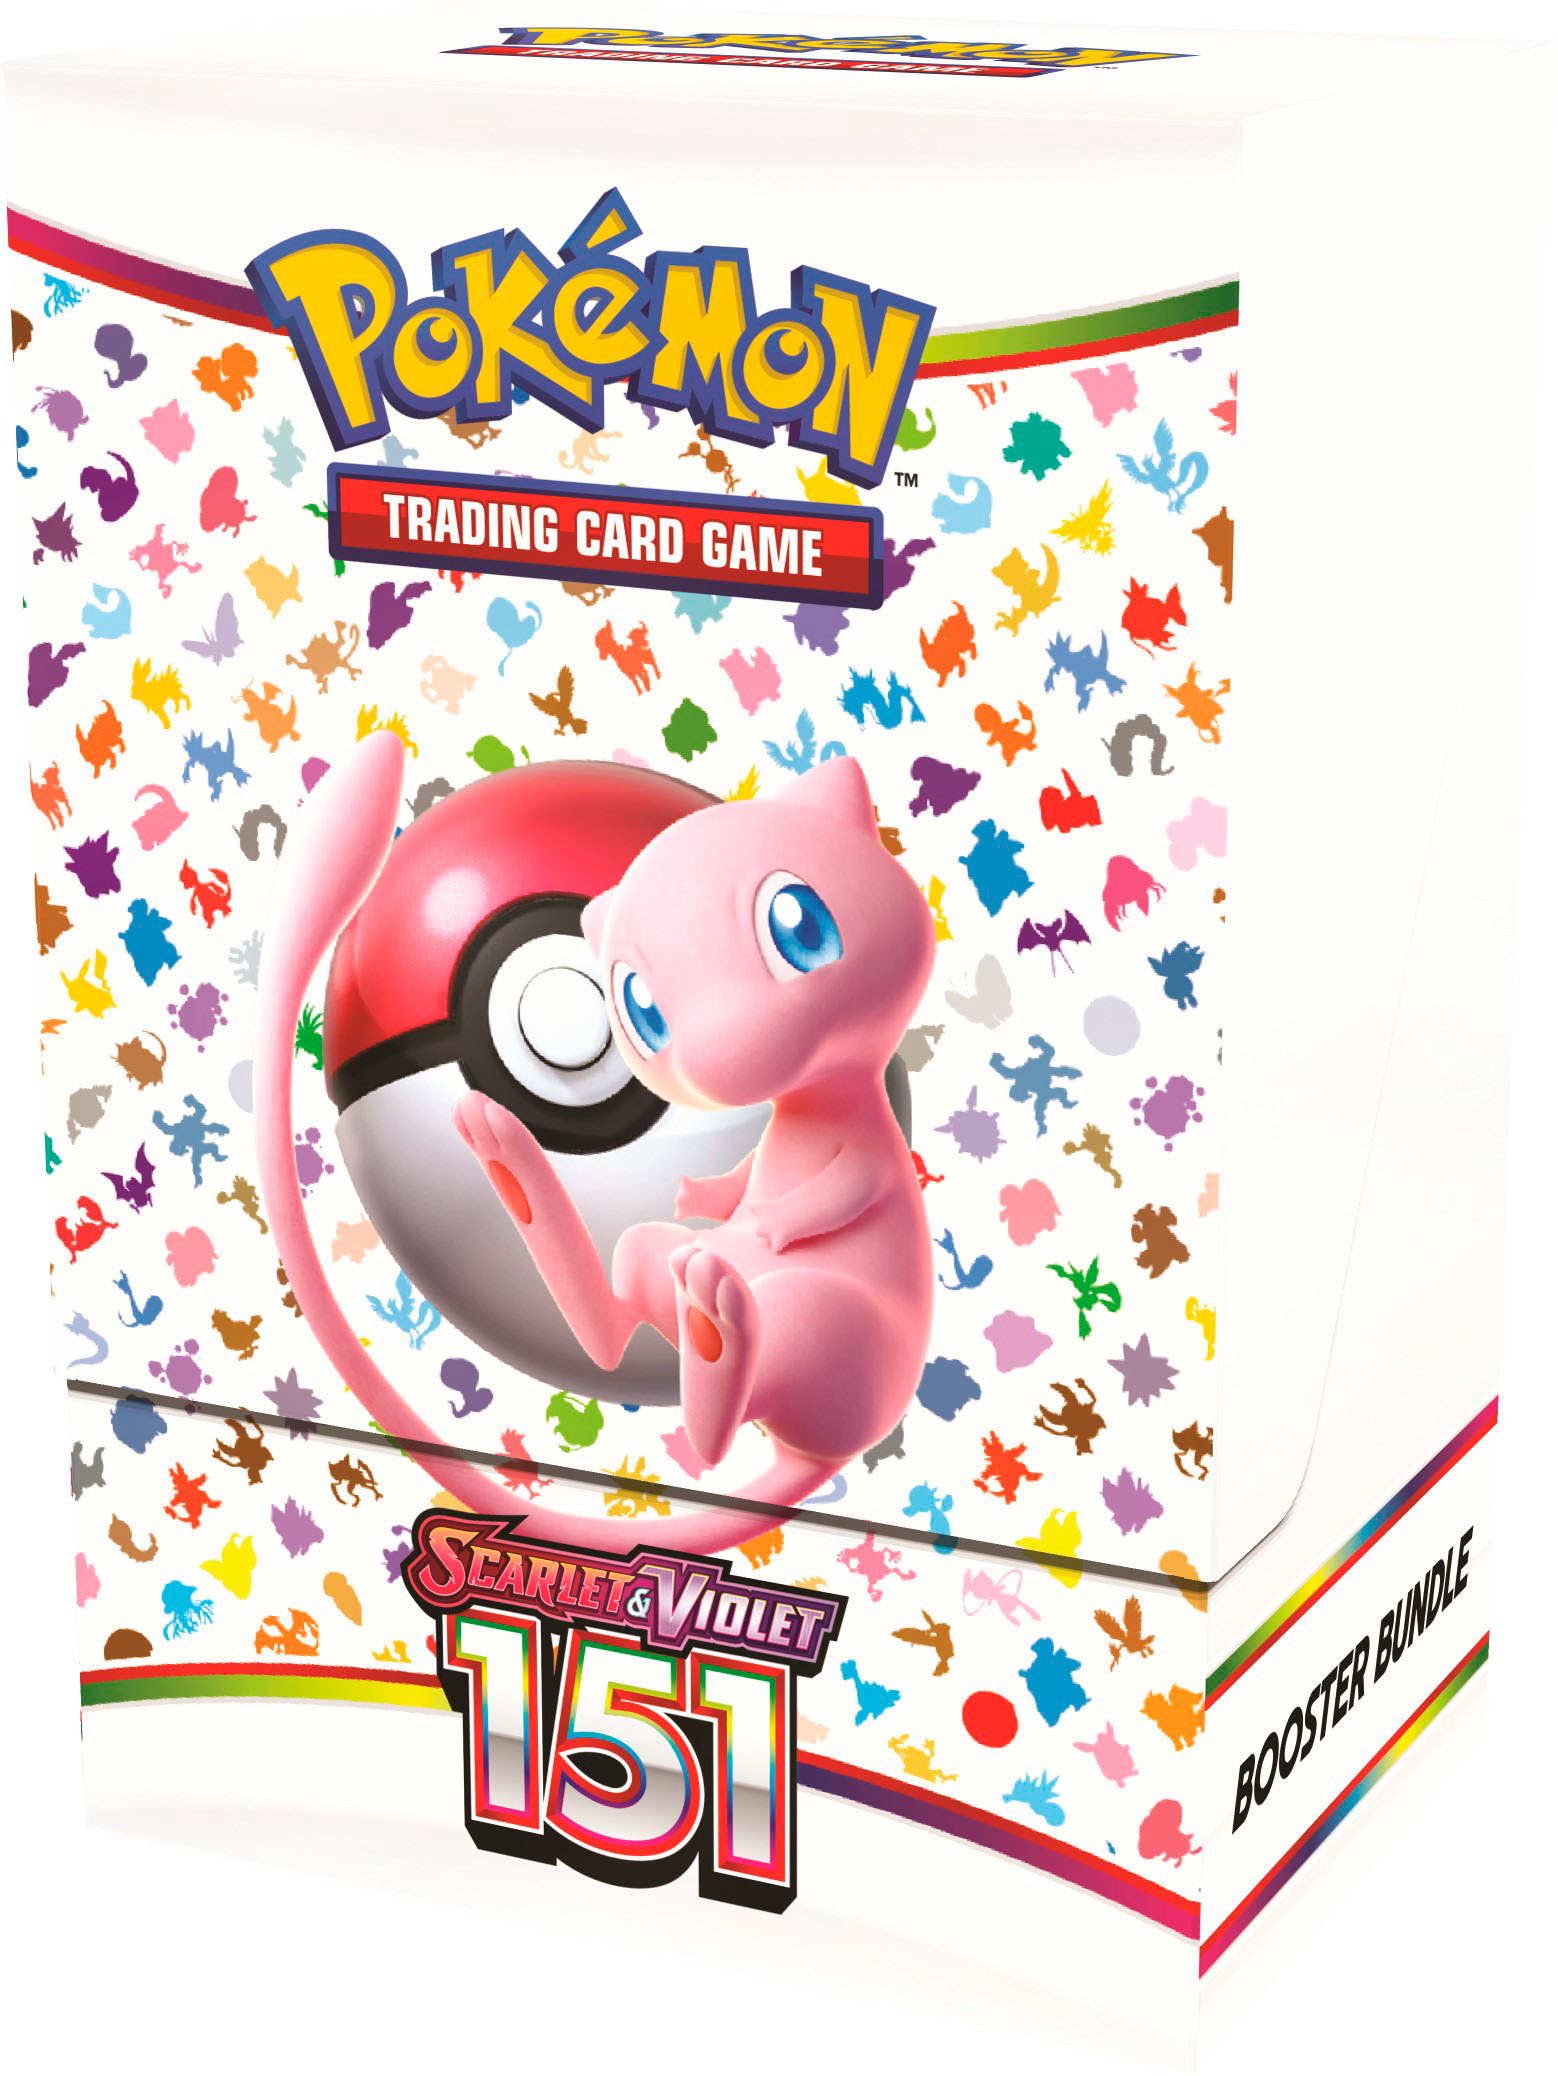 Pokémon 151 coffret Ultra premium sans booster complet fr - Pokémon